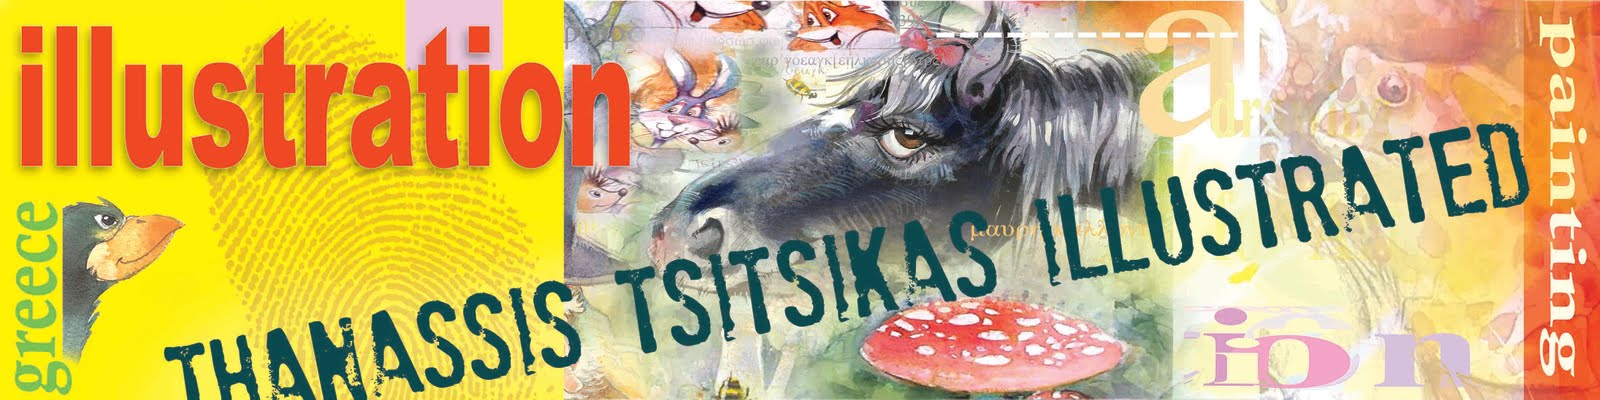 Thanassis Tsitsikas               "illustrated"